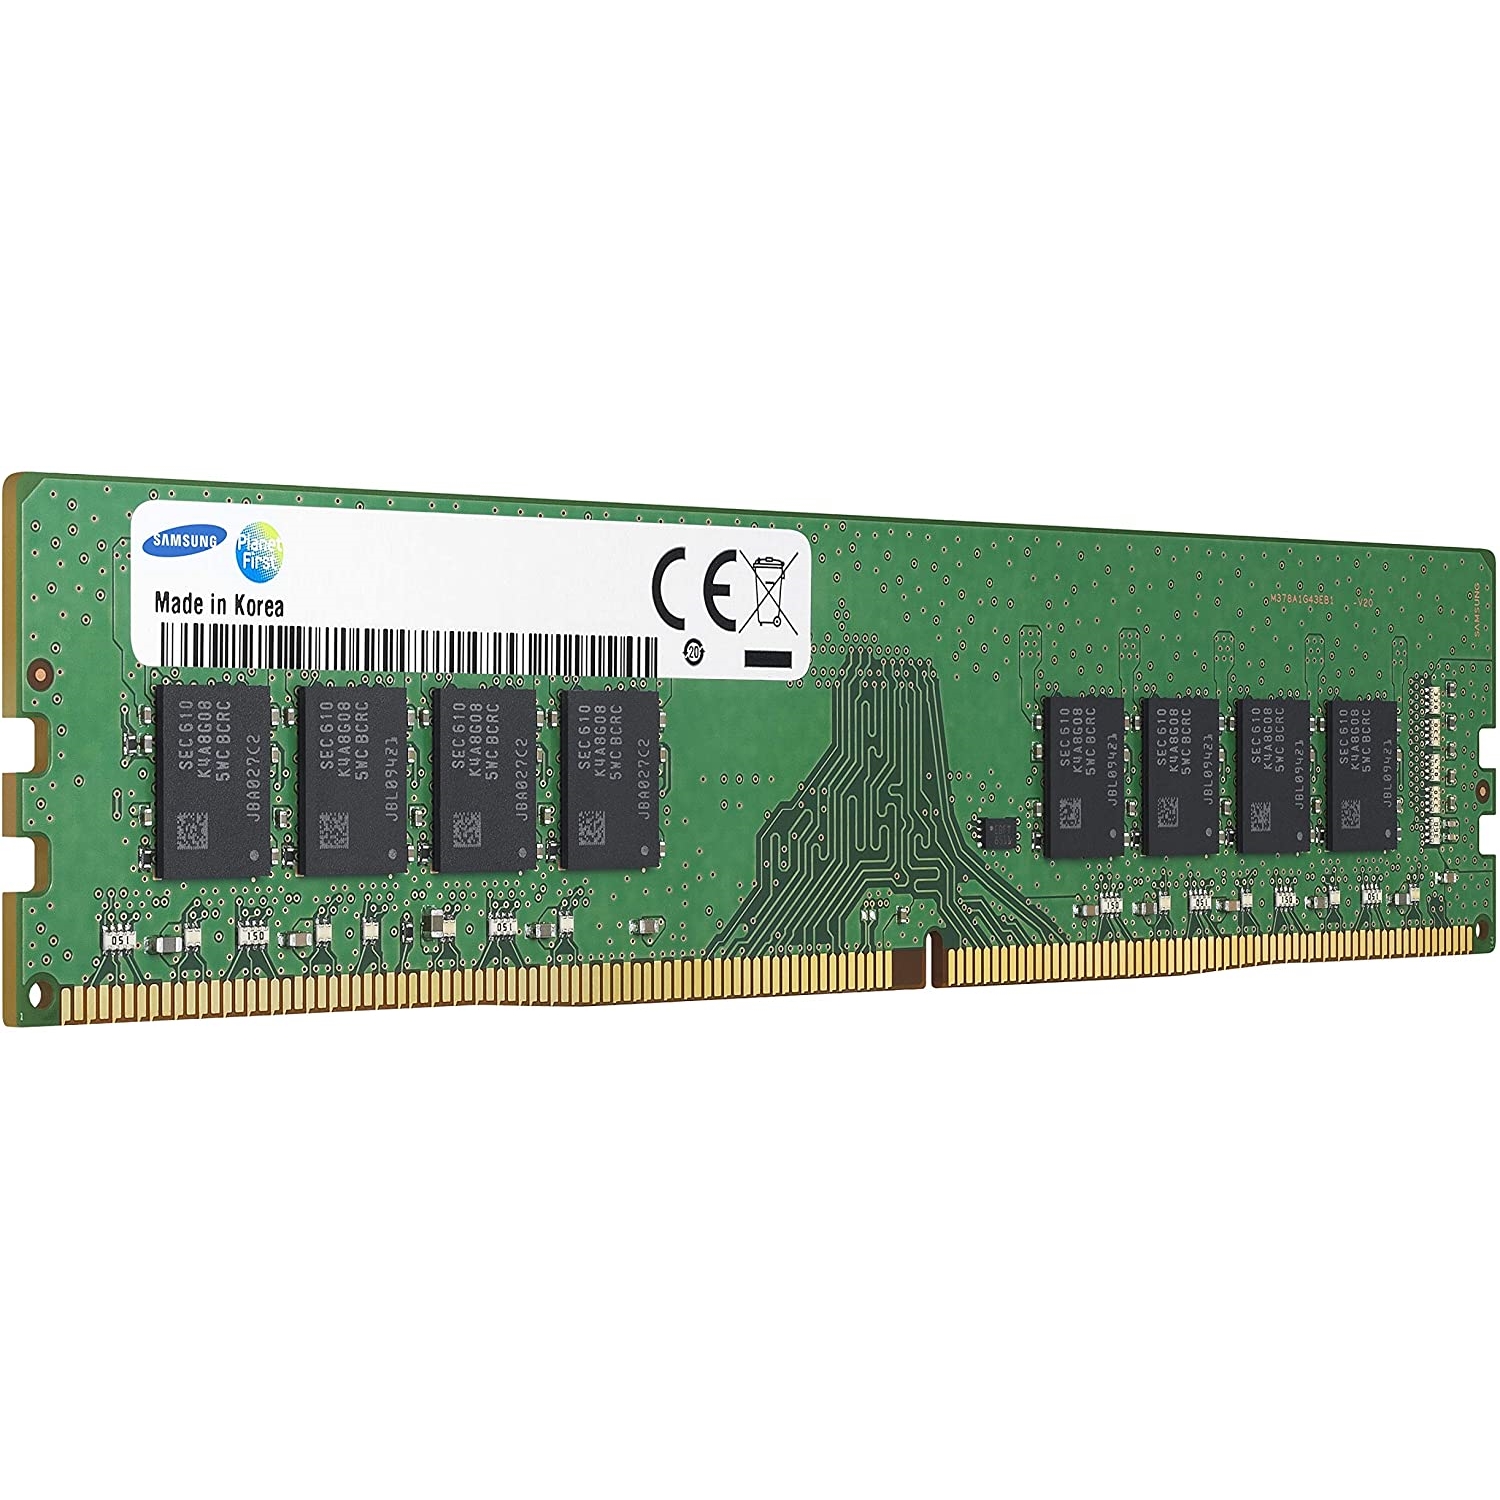 SAMSUNG 8GB 2666MHz DDR4 SAM2666/8 PC RAM